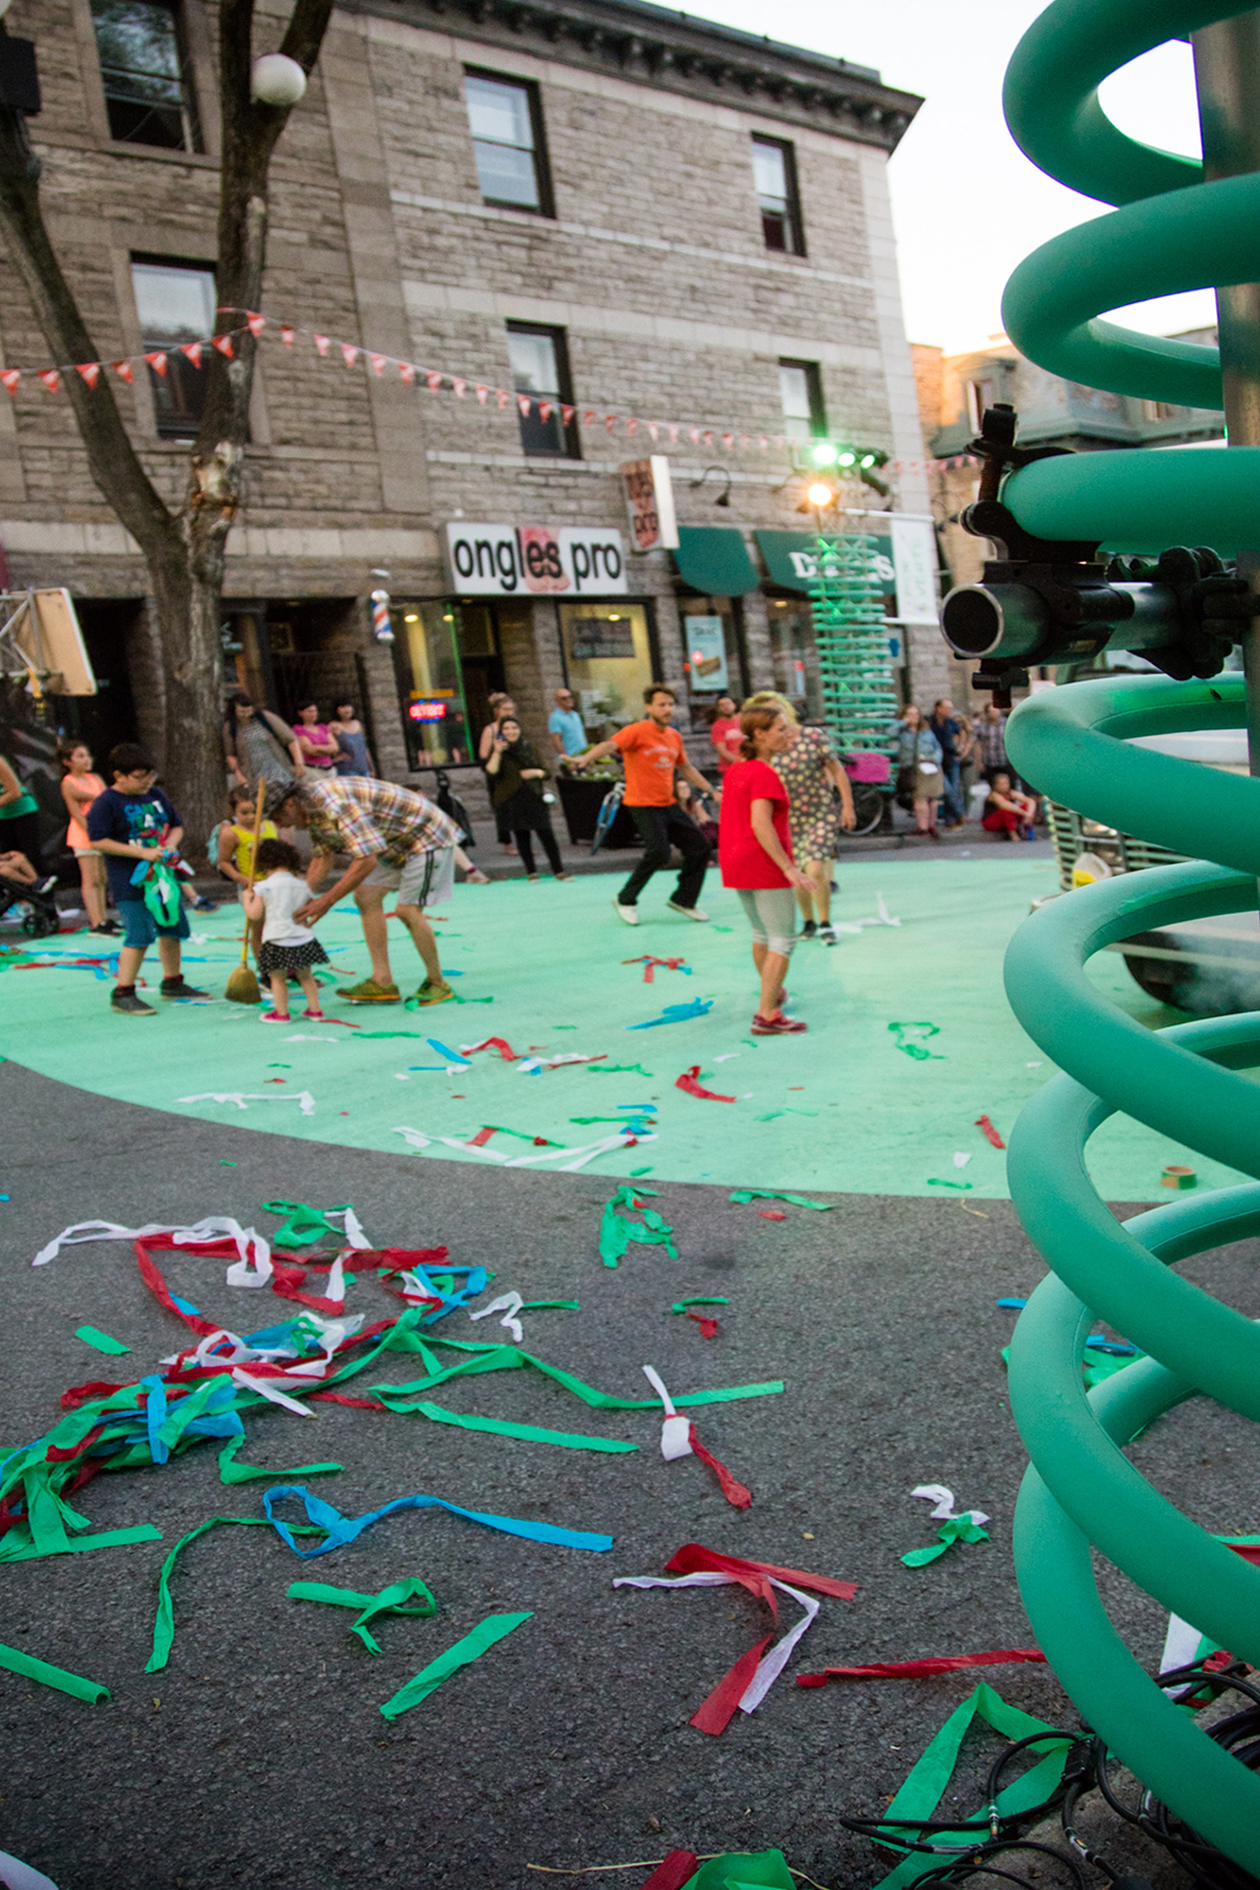 Familles célébrant dans la rue pleine de confettis après une performance de théâtre urbain sur la scène décorée de spring géant